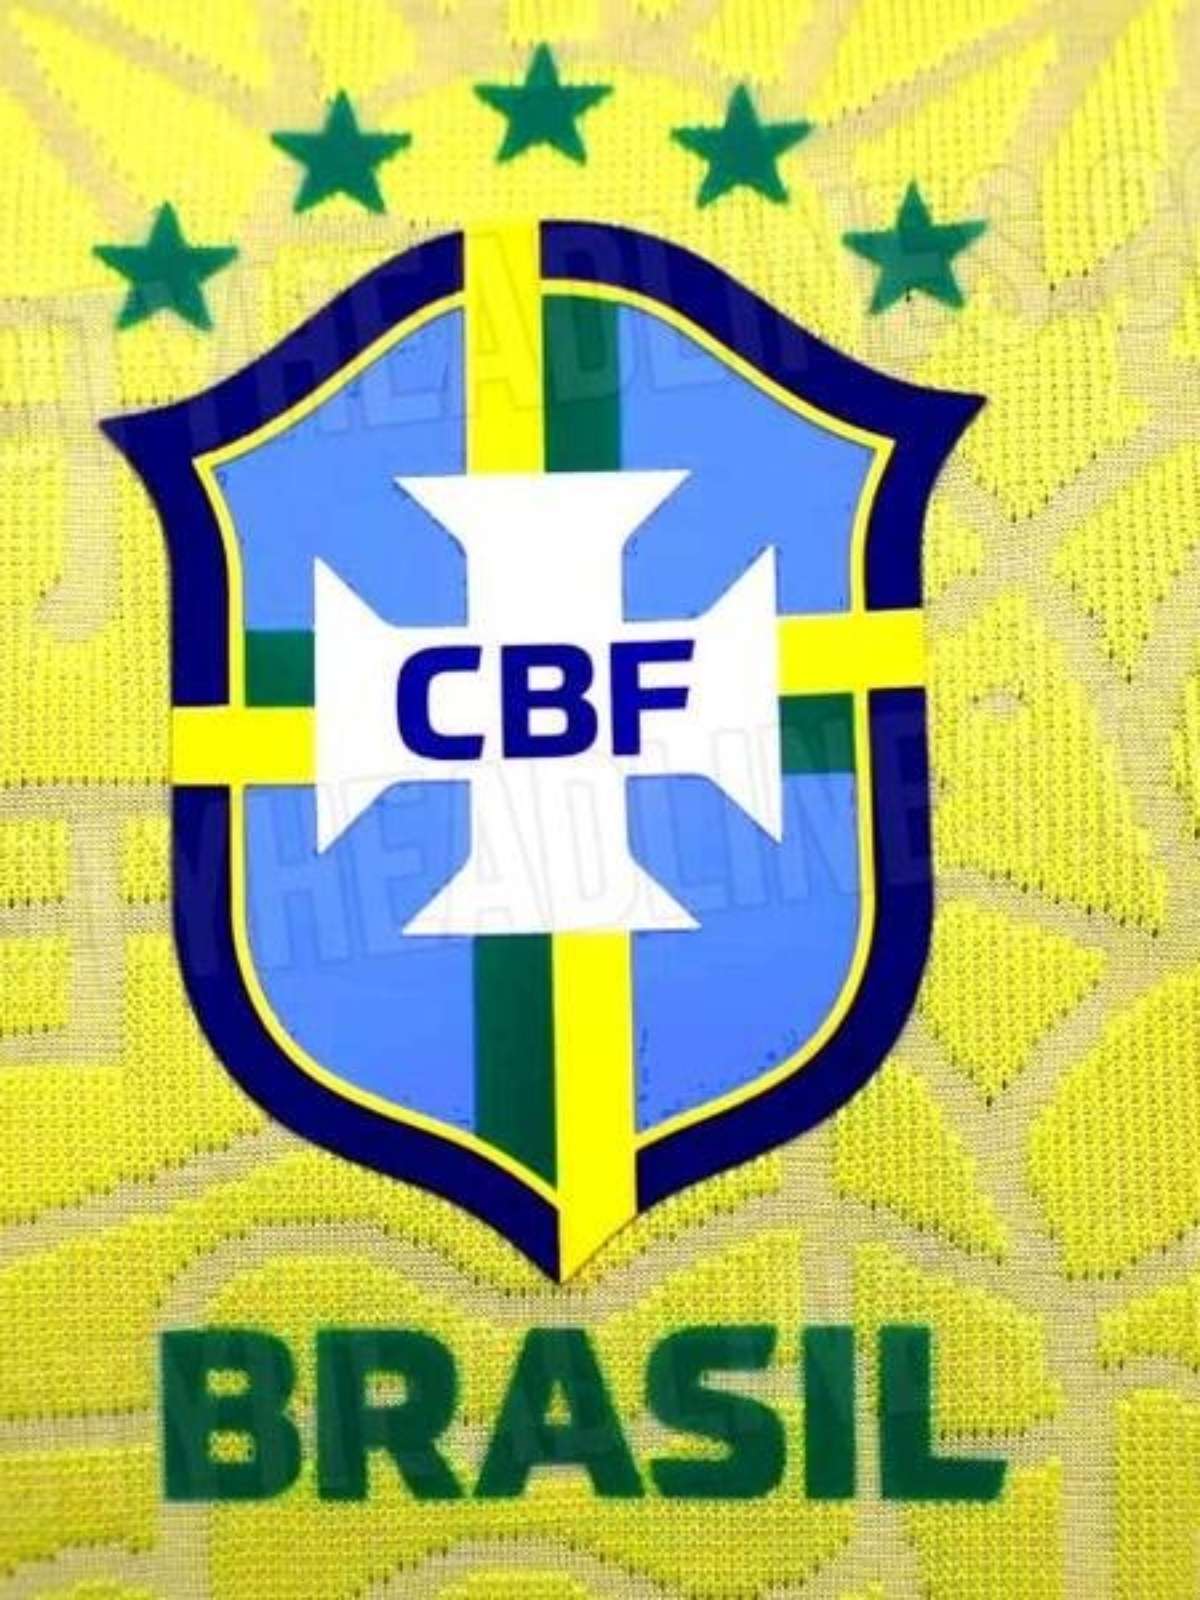 Site revela possível nova camisa da seleção brasileira - Folha PE